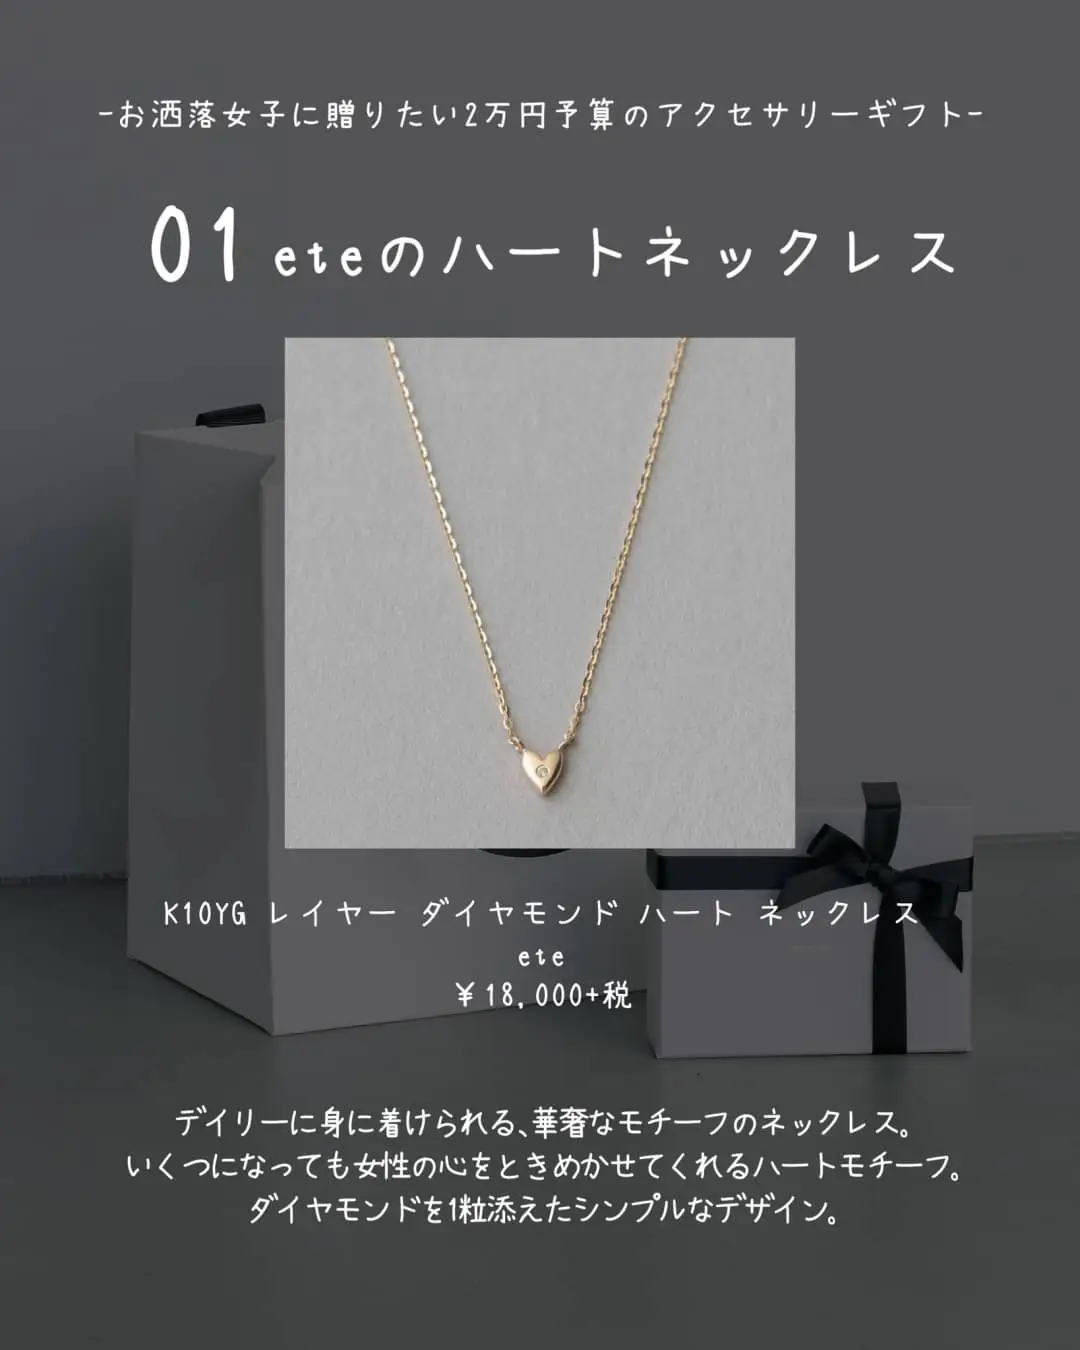 10,780円ete ネックレス ハート レディース 韓国風アクセサリー ファッション